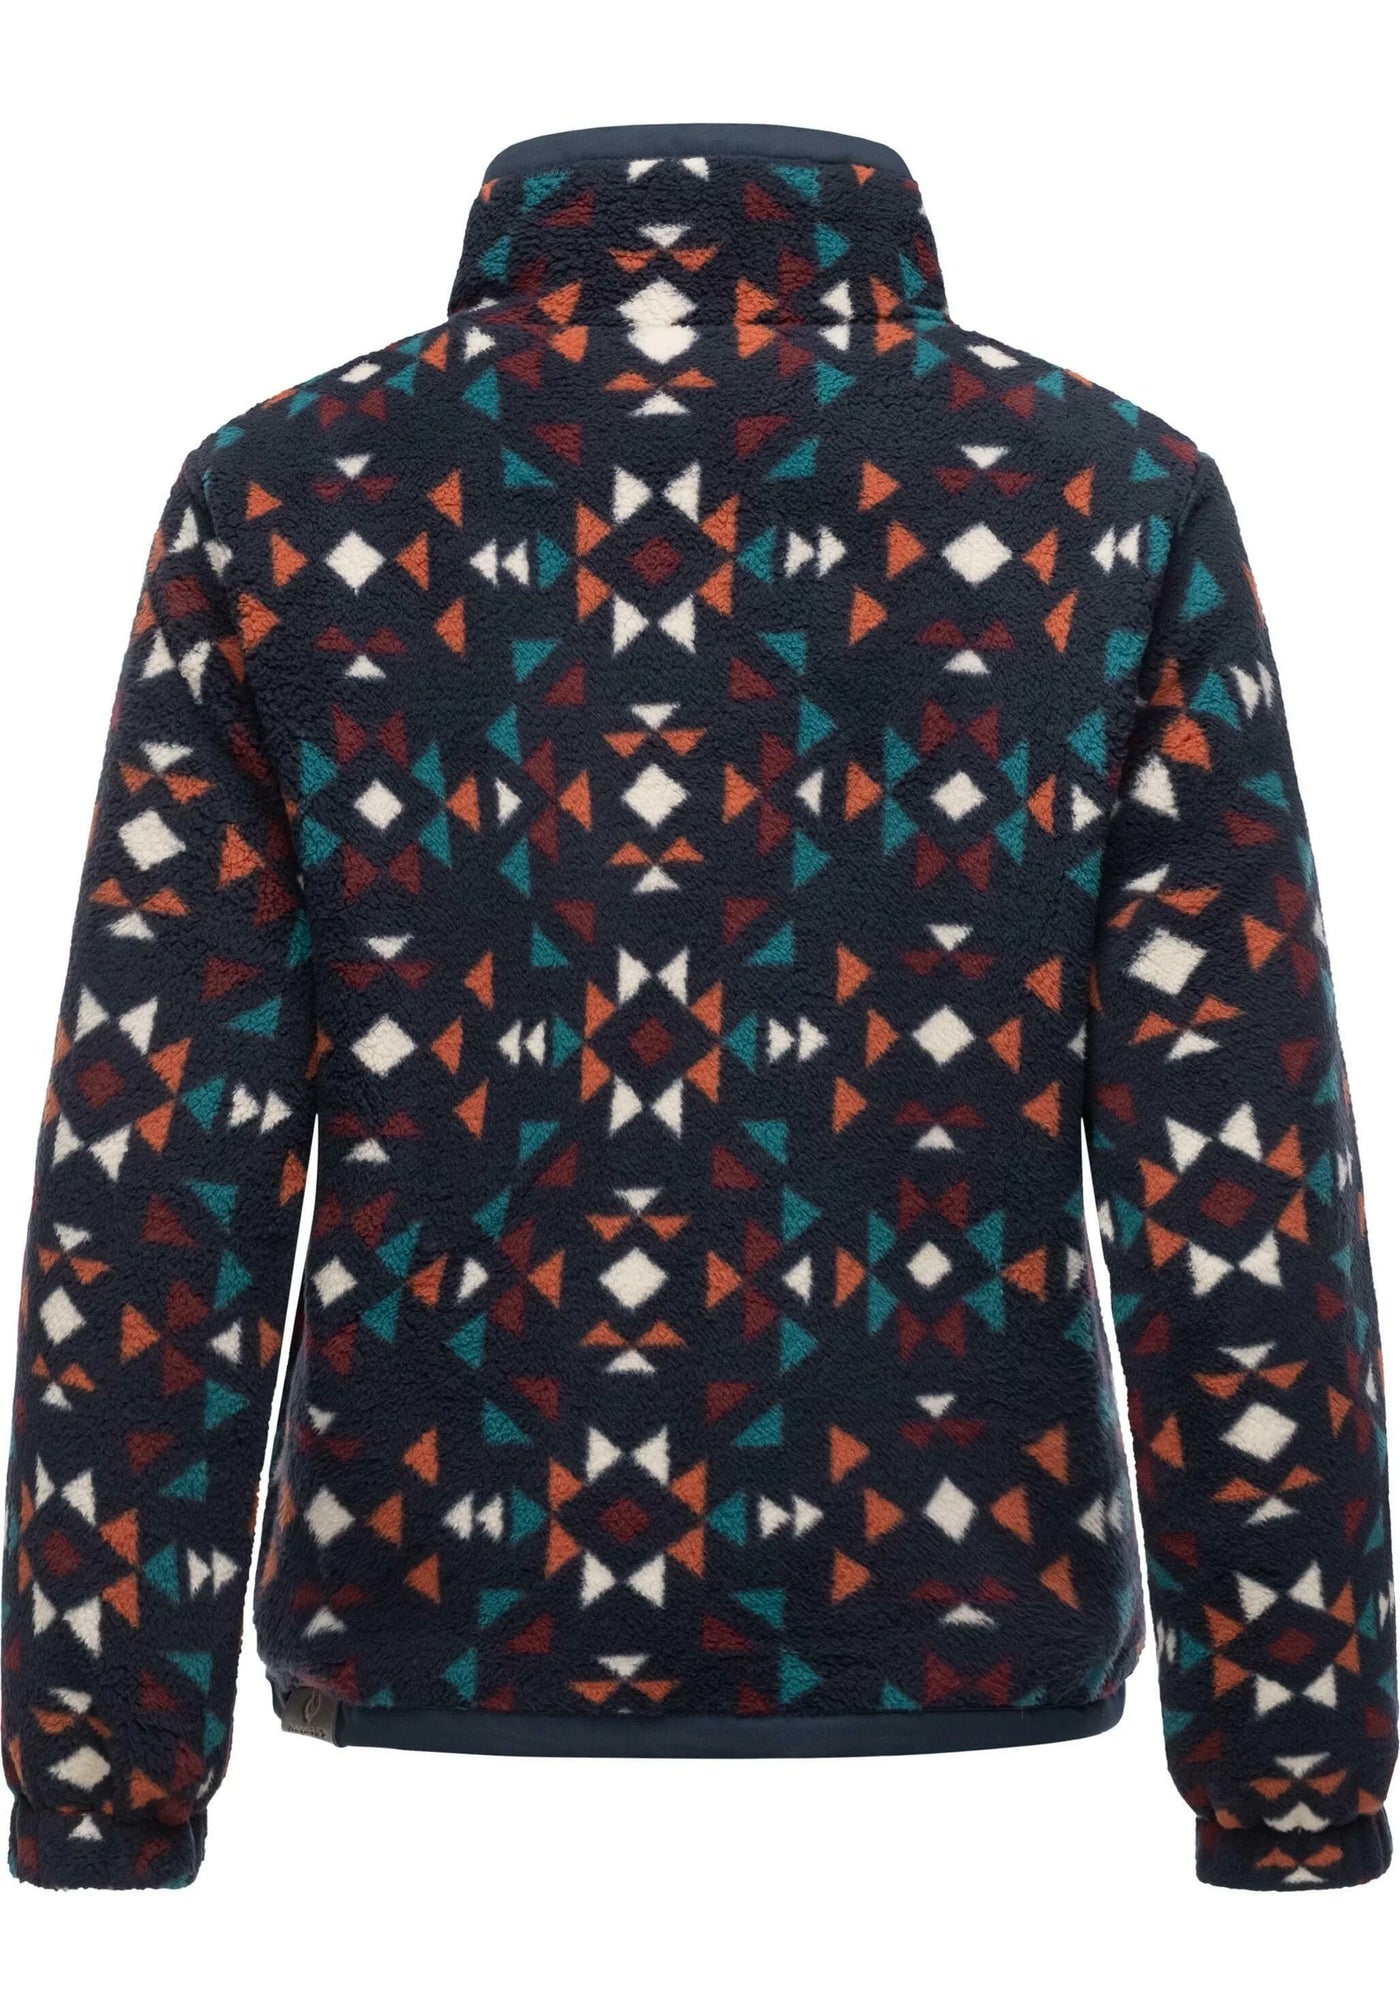 Nordicka Aztec Zip Fleece Jacket